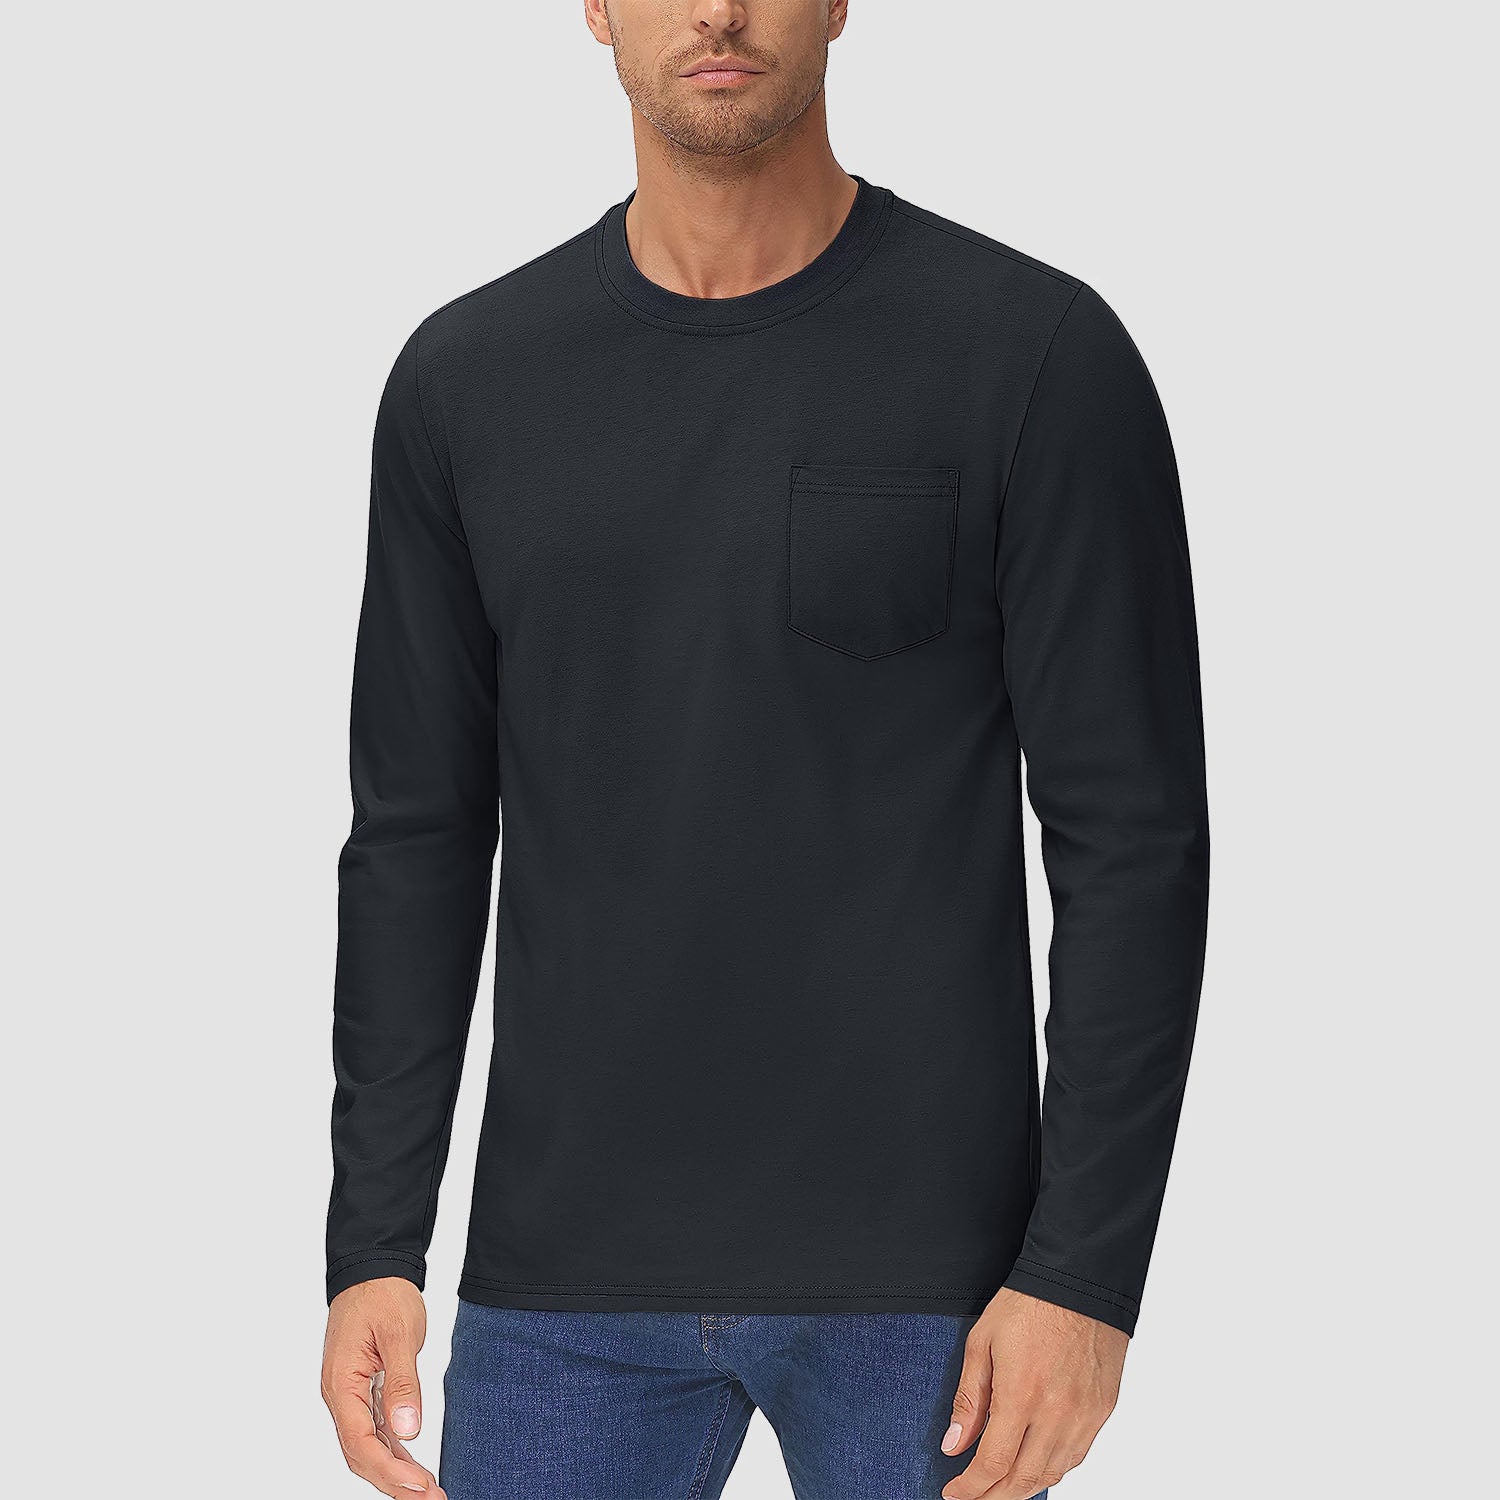 Men's Basic Long Sleeve Shirt Casual Lightweight T-Shirt